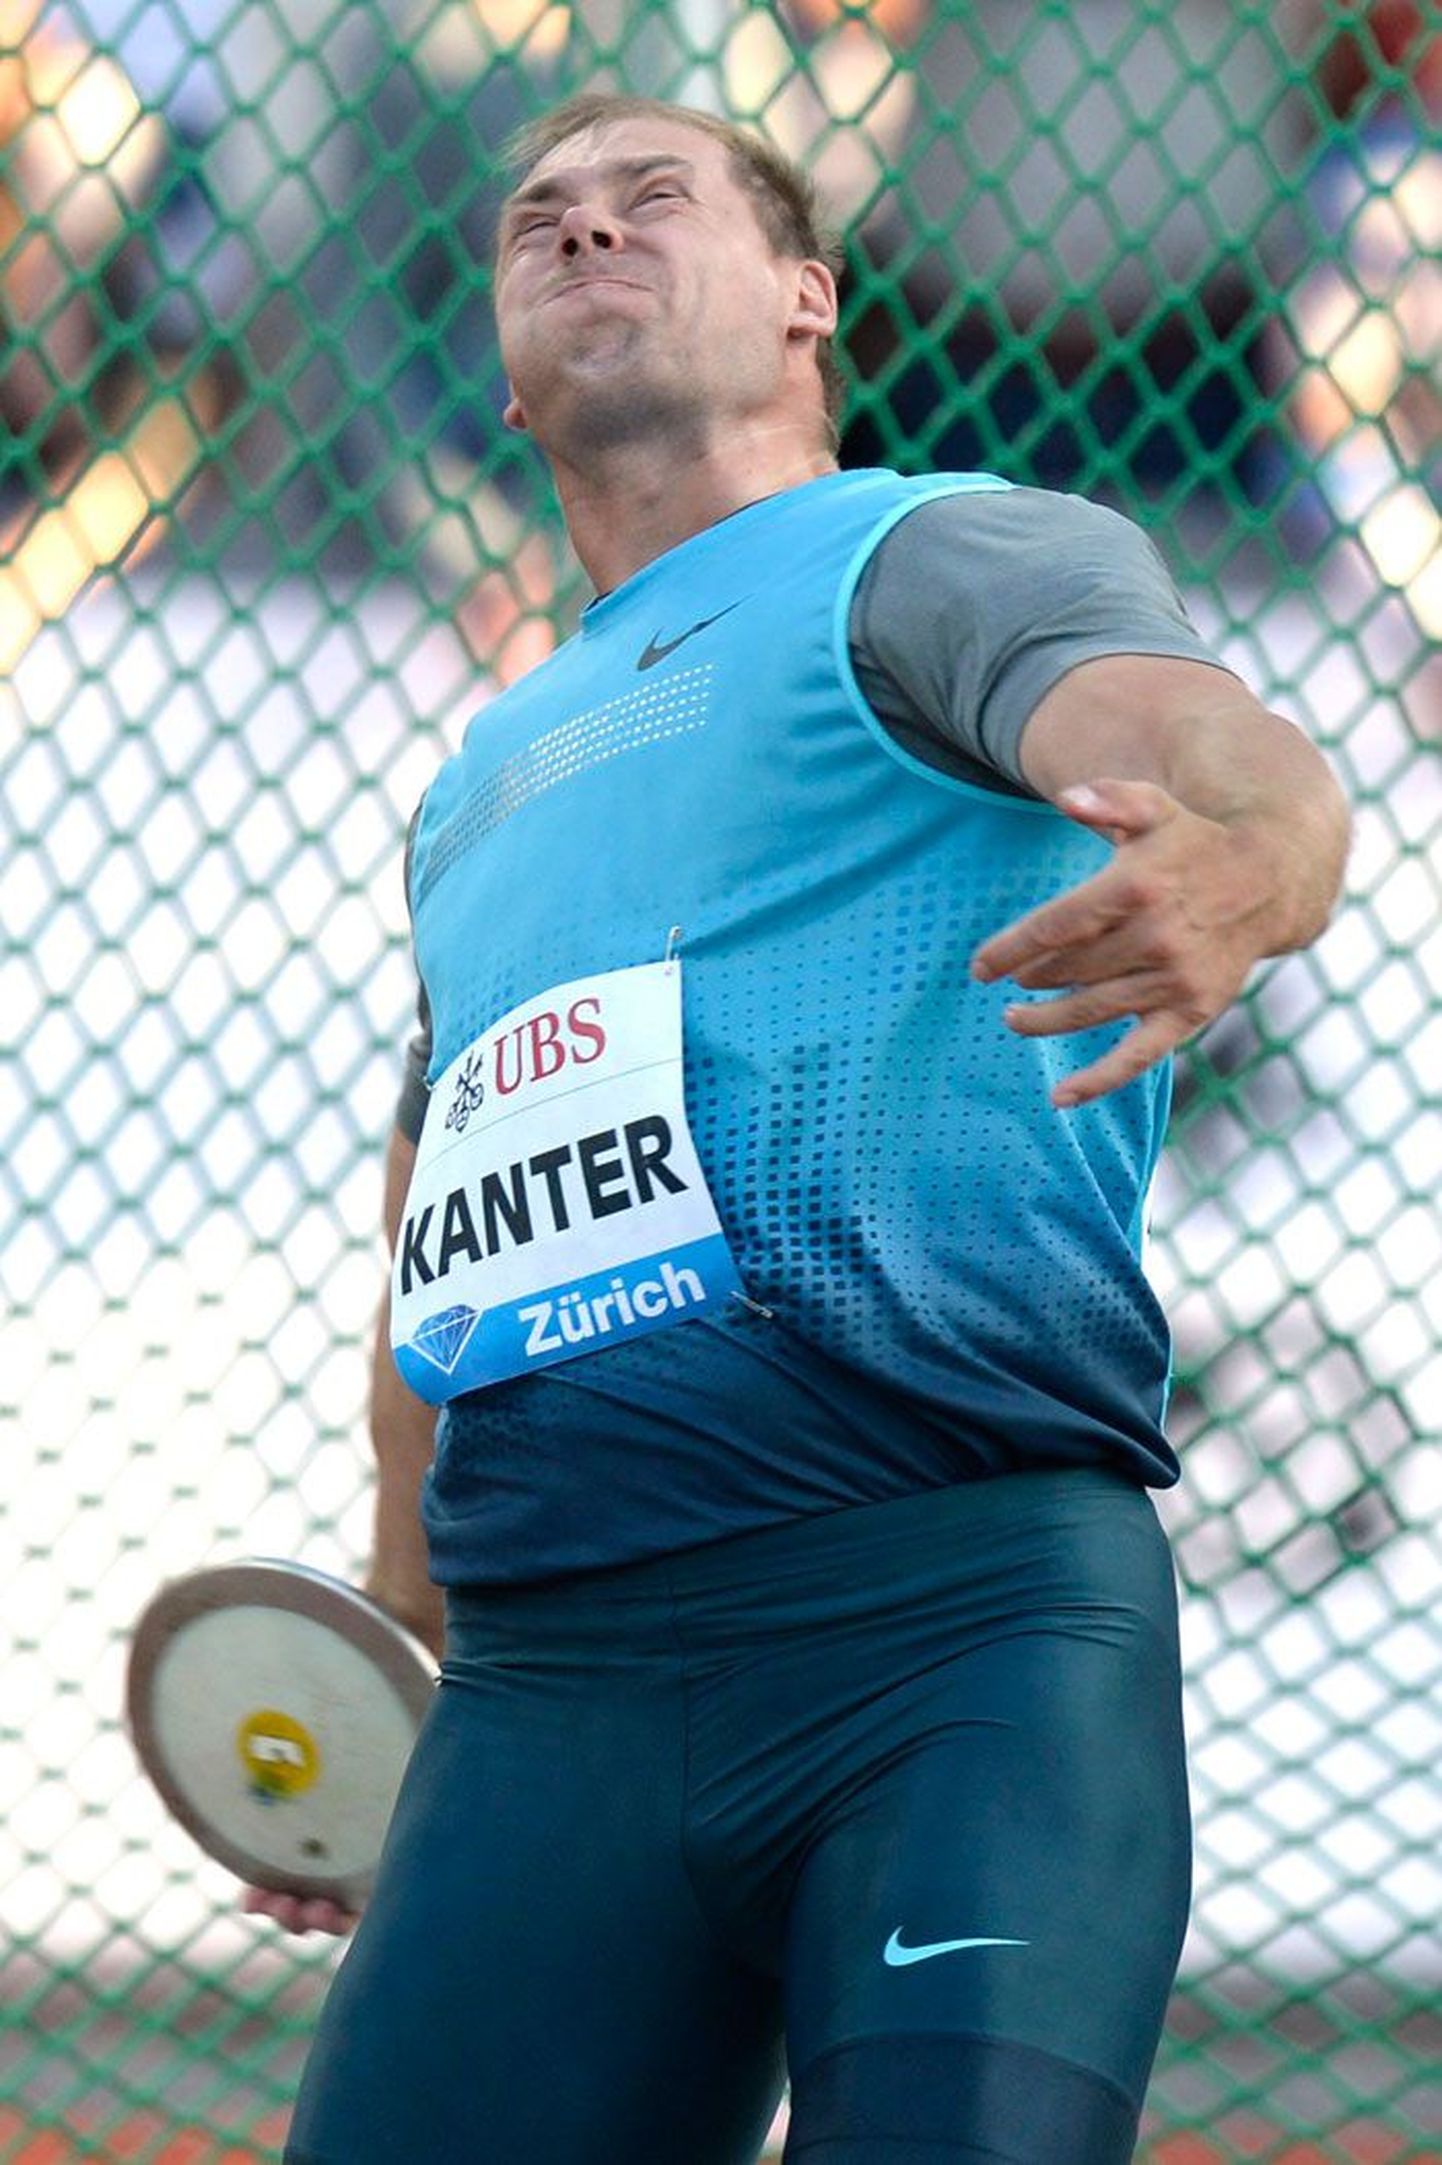 Удастся ли опытному легкоатлету Герду Кантеру и на Олимпиаде в Рио-де-Жанейро завоевать медаль? Не окажется ли она единственной наградой, завоеванной представителем Эстонии?